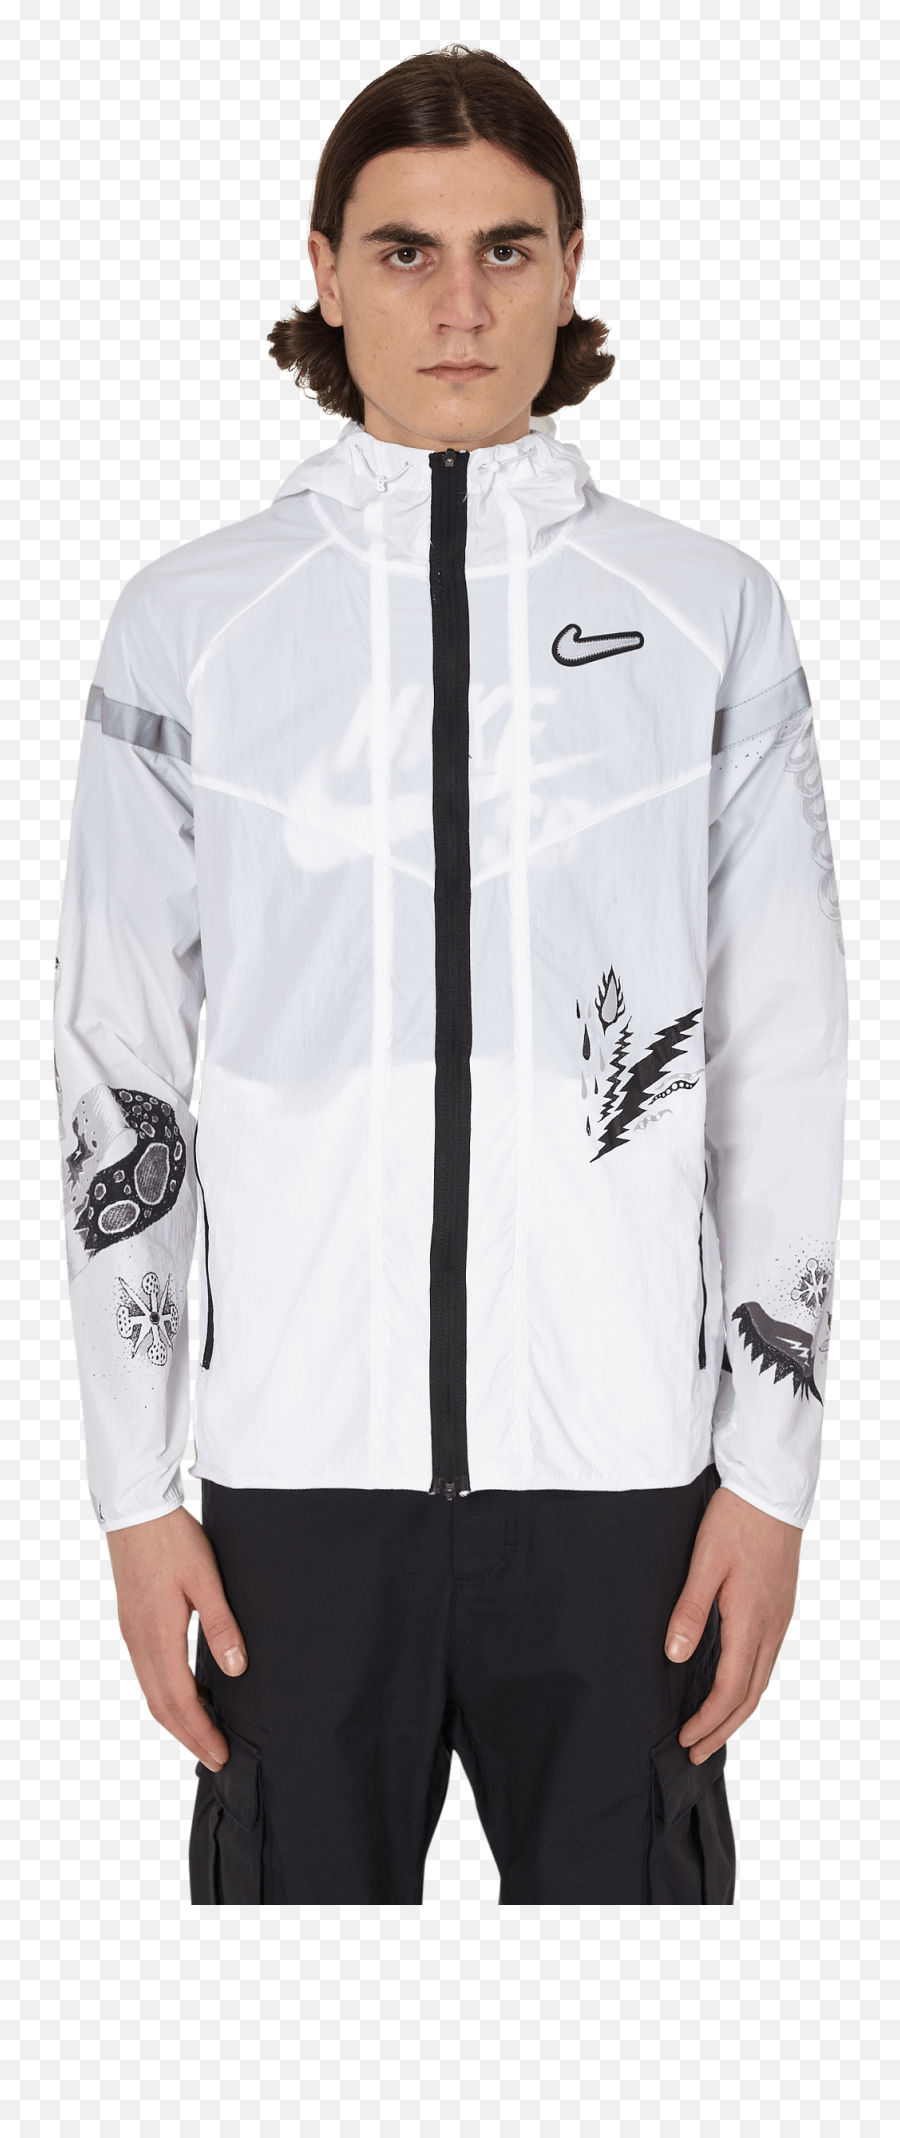 Nike Transparent Running Jacket Shop - Nike Windrunner Wild Run Men S Running Jacket Emoji,Transparent Jacket